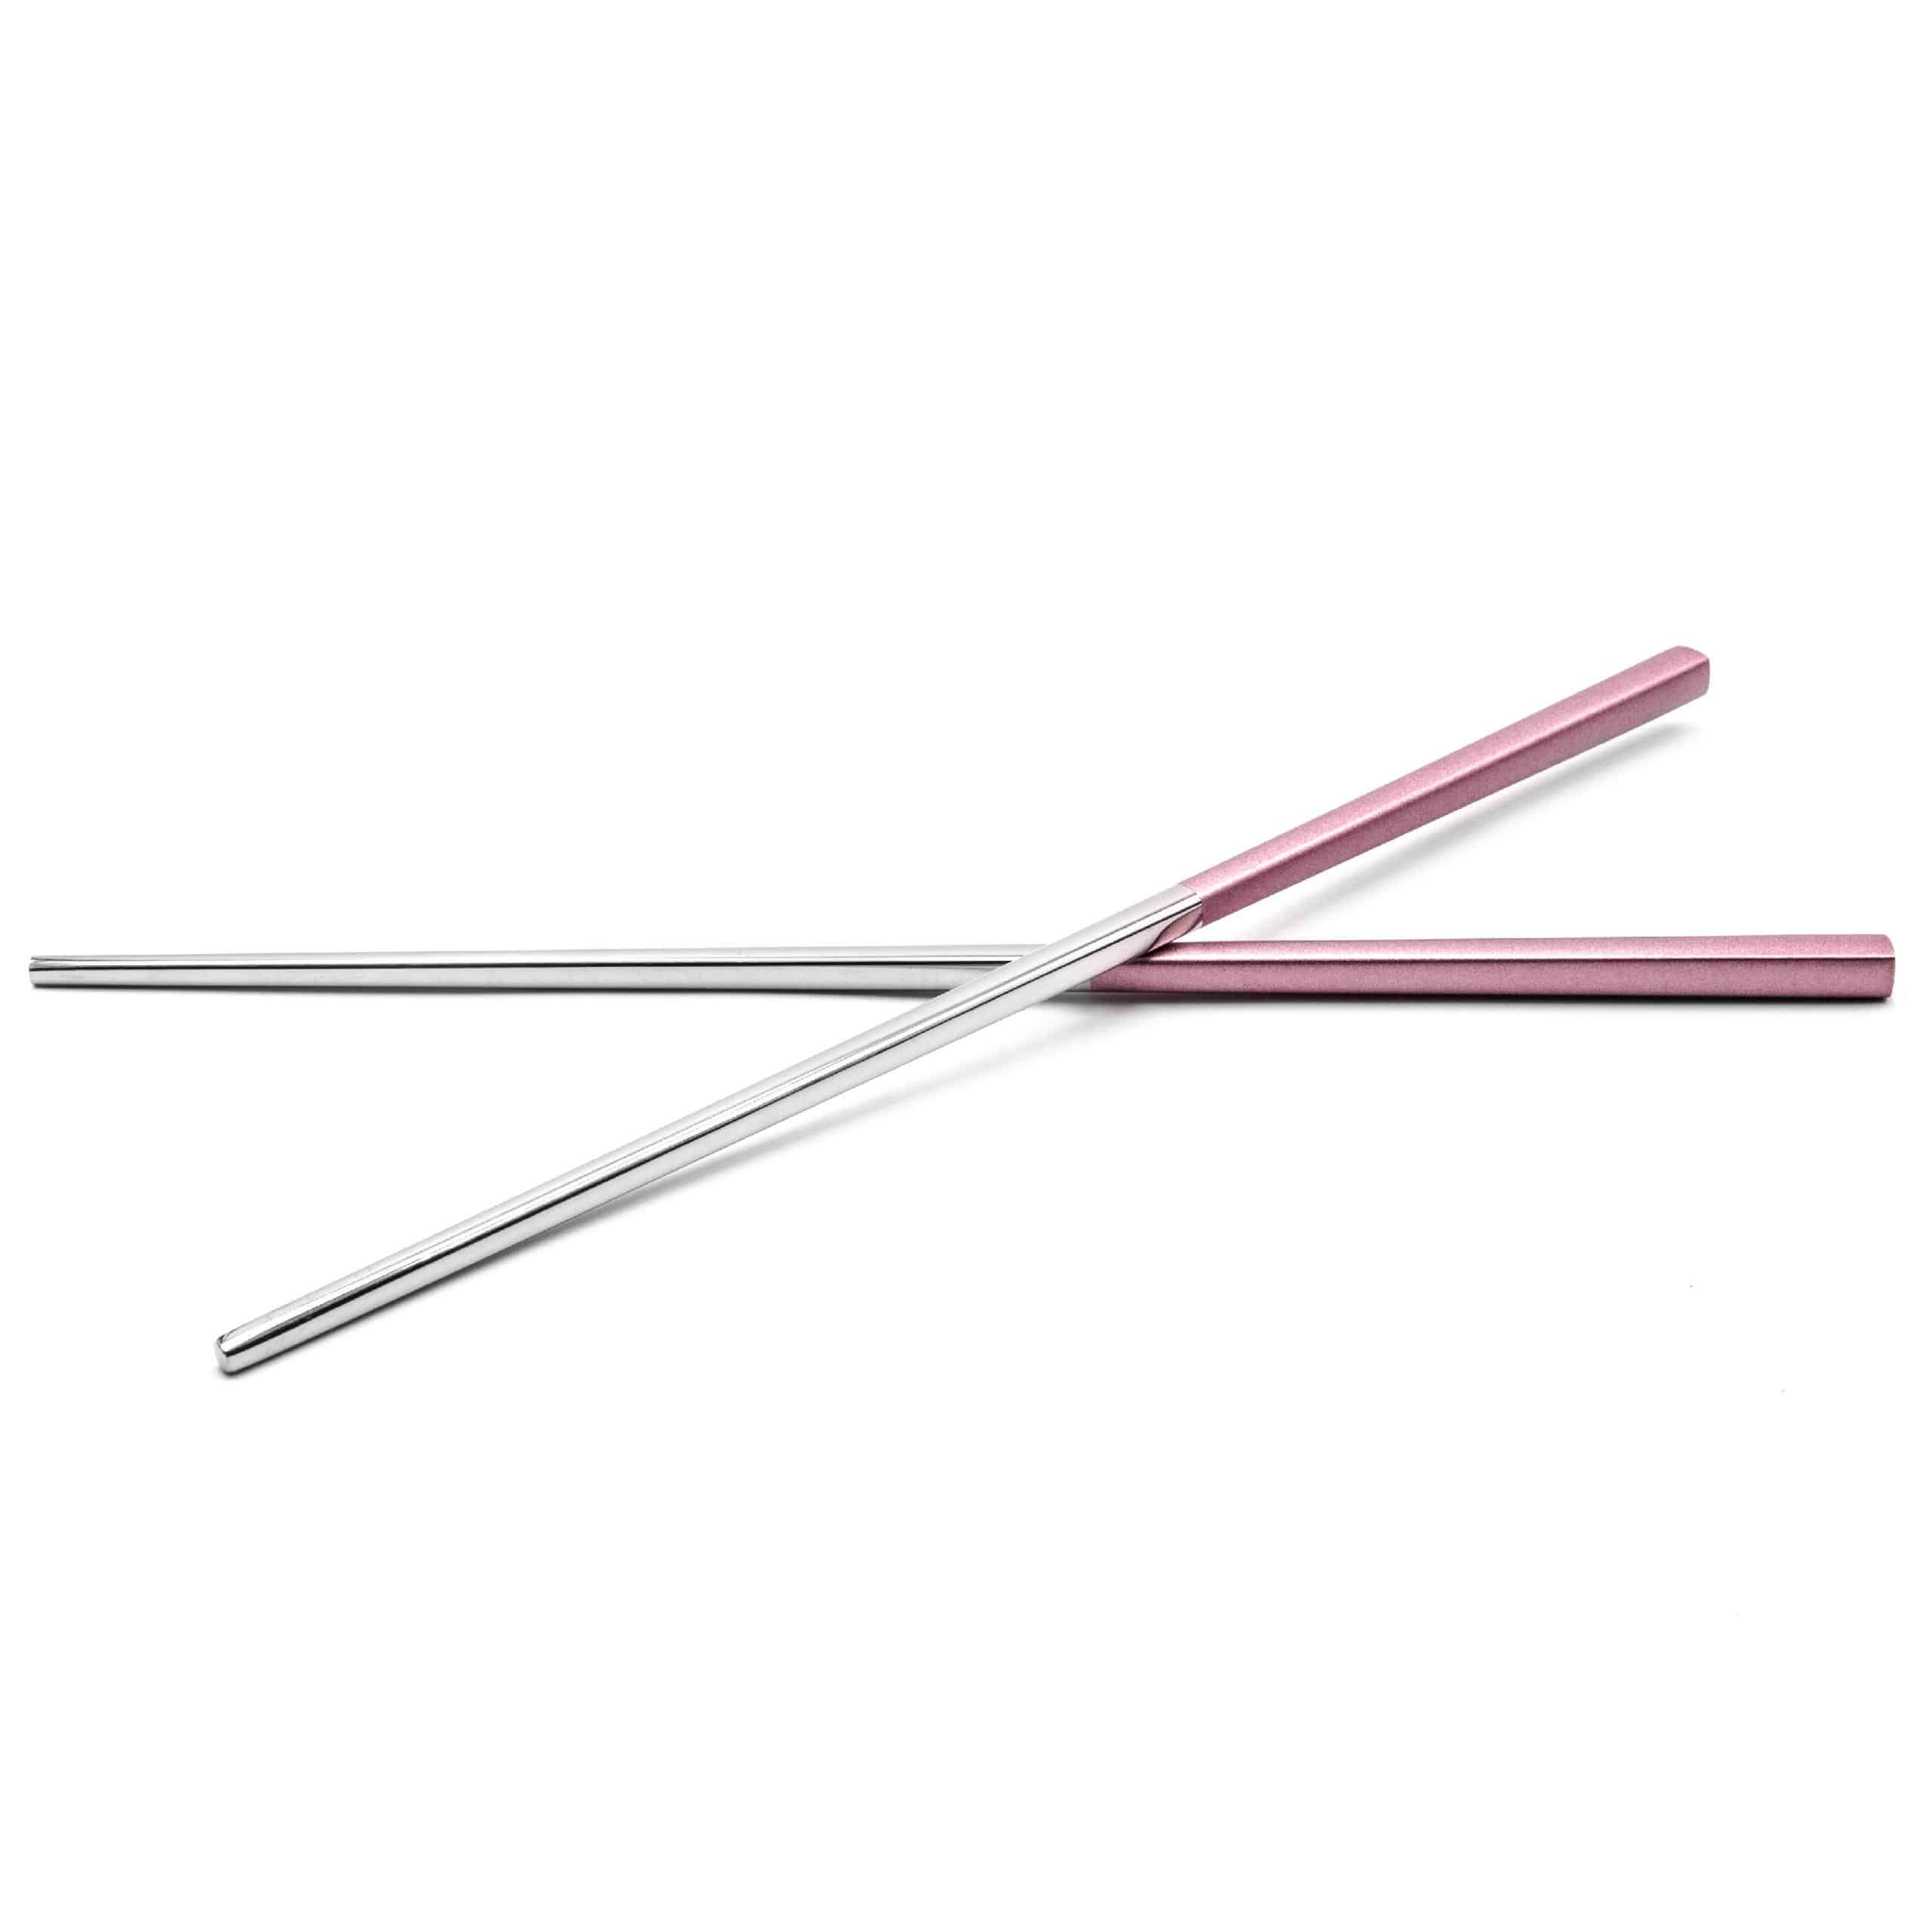 Pałeczki do jedzenia sushi (1 para) - 23 cm, stal nierdzewna, różowy, srebrny